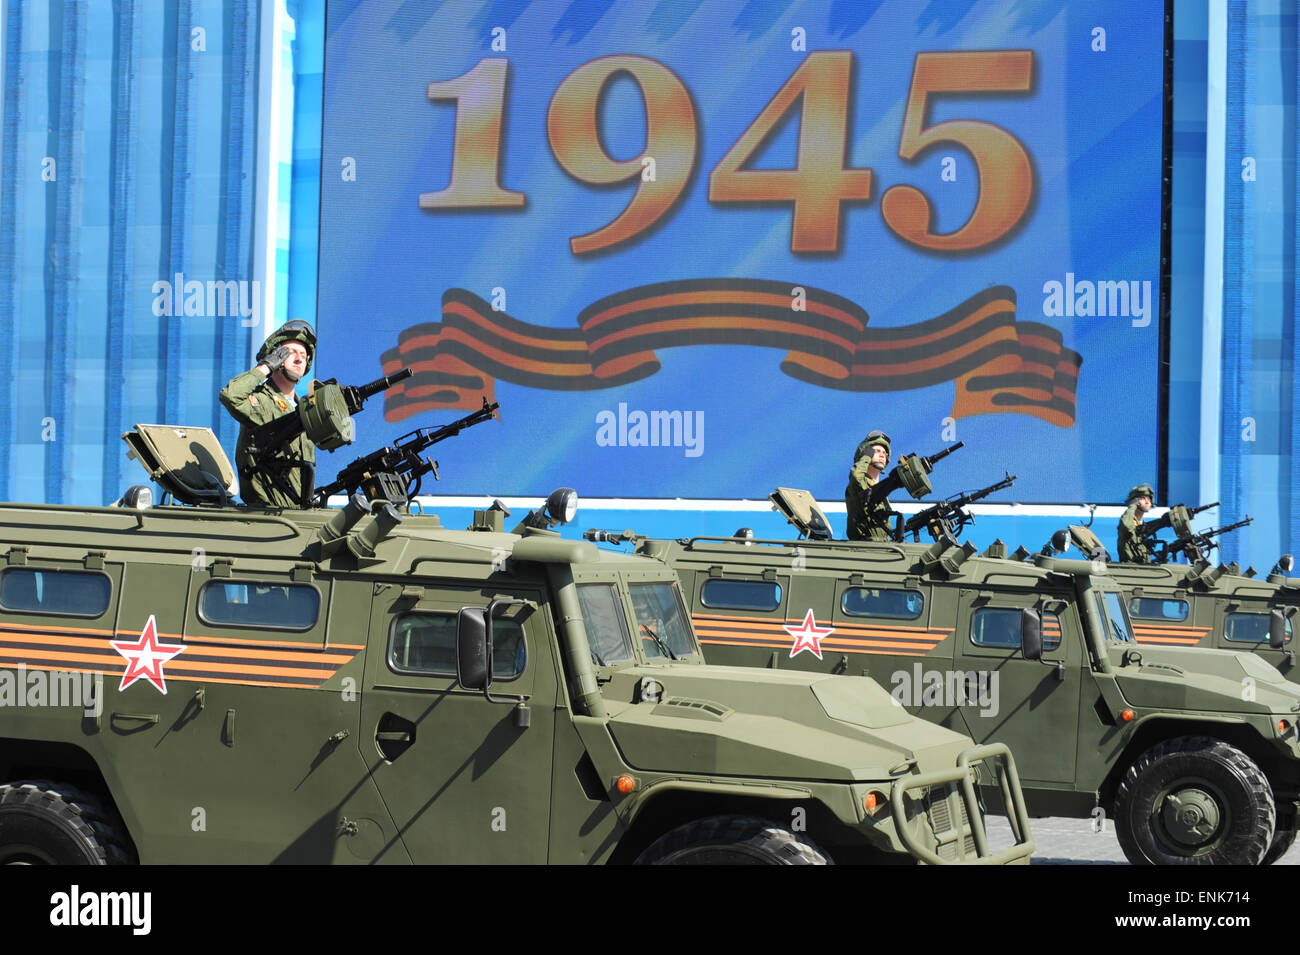 Moskau. 7. Mai 2015. Ein GAZ Tiger Infanterie Mobilität Fahrzeug sieht man im Roten Platz in Moskau, am 7. Mai 2015, während der Hauptprobe für den Tag des Sieges Militärparade. Russland feiert den 70. Jahrestag des Sieges über Nazi-Deutschland 1945 am 9. Mai. Bildnachweis: Dai Tianfang/Xinhua/Alamy Live-Nachrichten Stockfoto